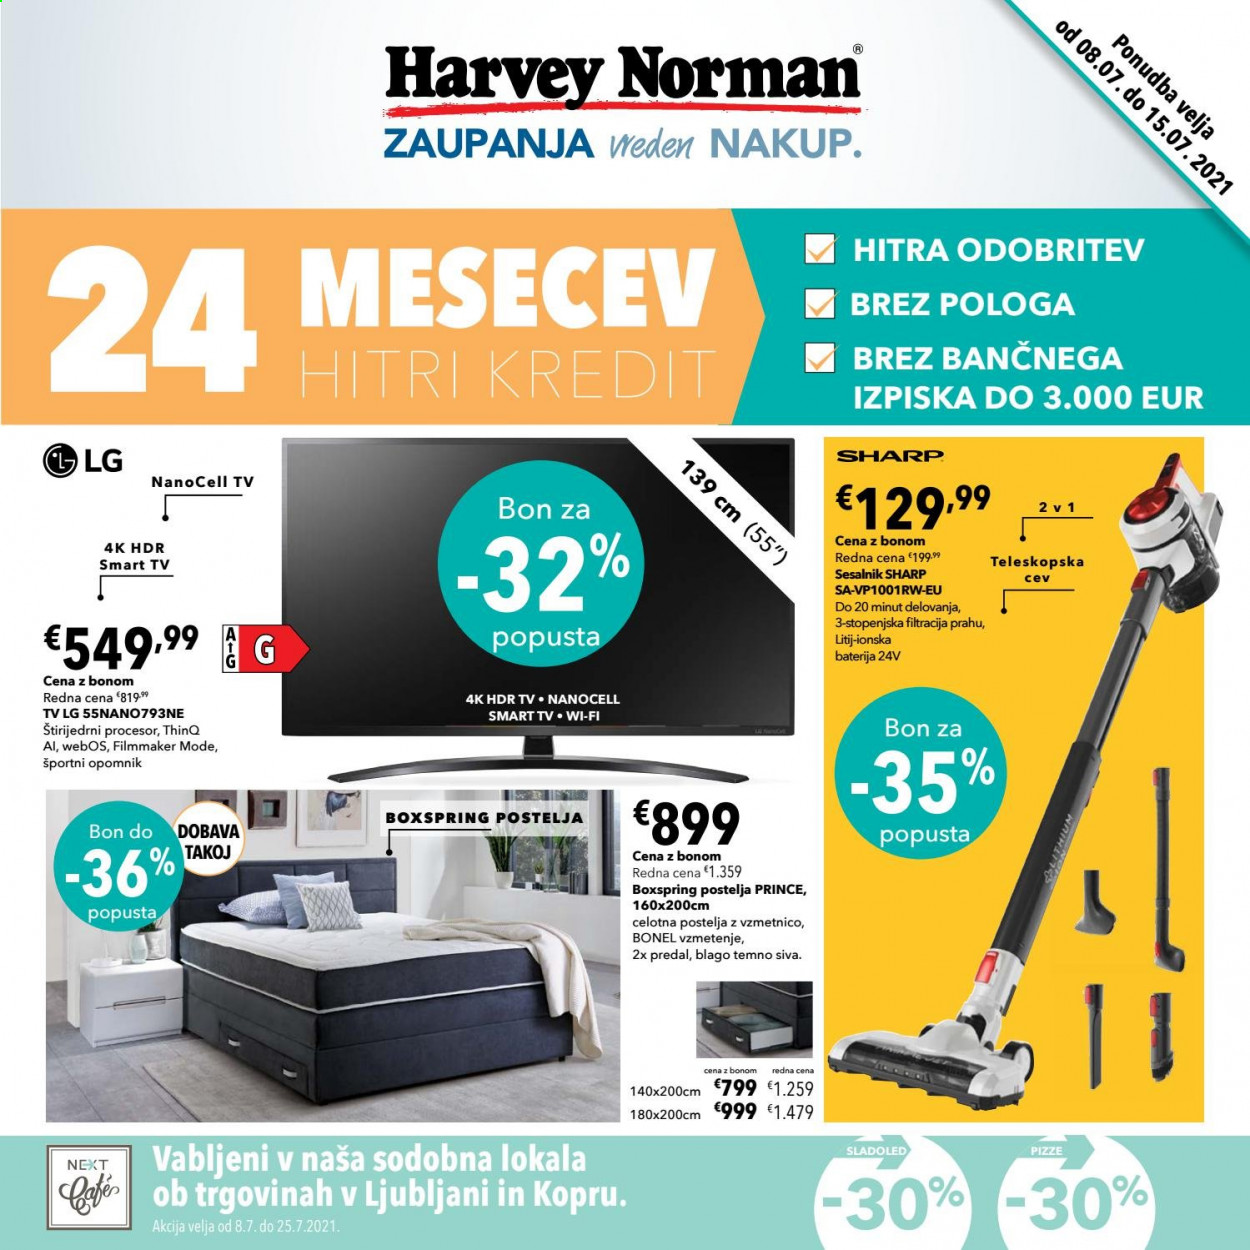 thumbnail - Harvey Norman katalog - 8.7.2021 - 15.7.2021 - Ponudba izdelkov - postelja, Sharp, LG, televizor, sesalnik. Stran 1.